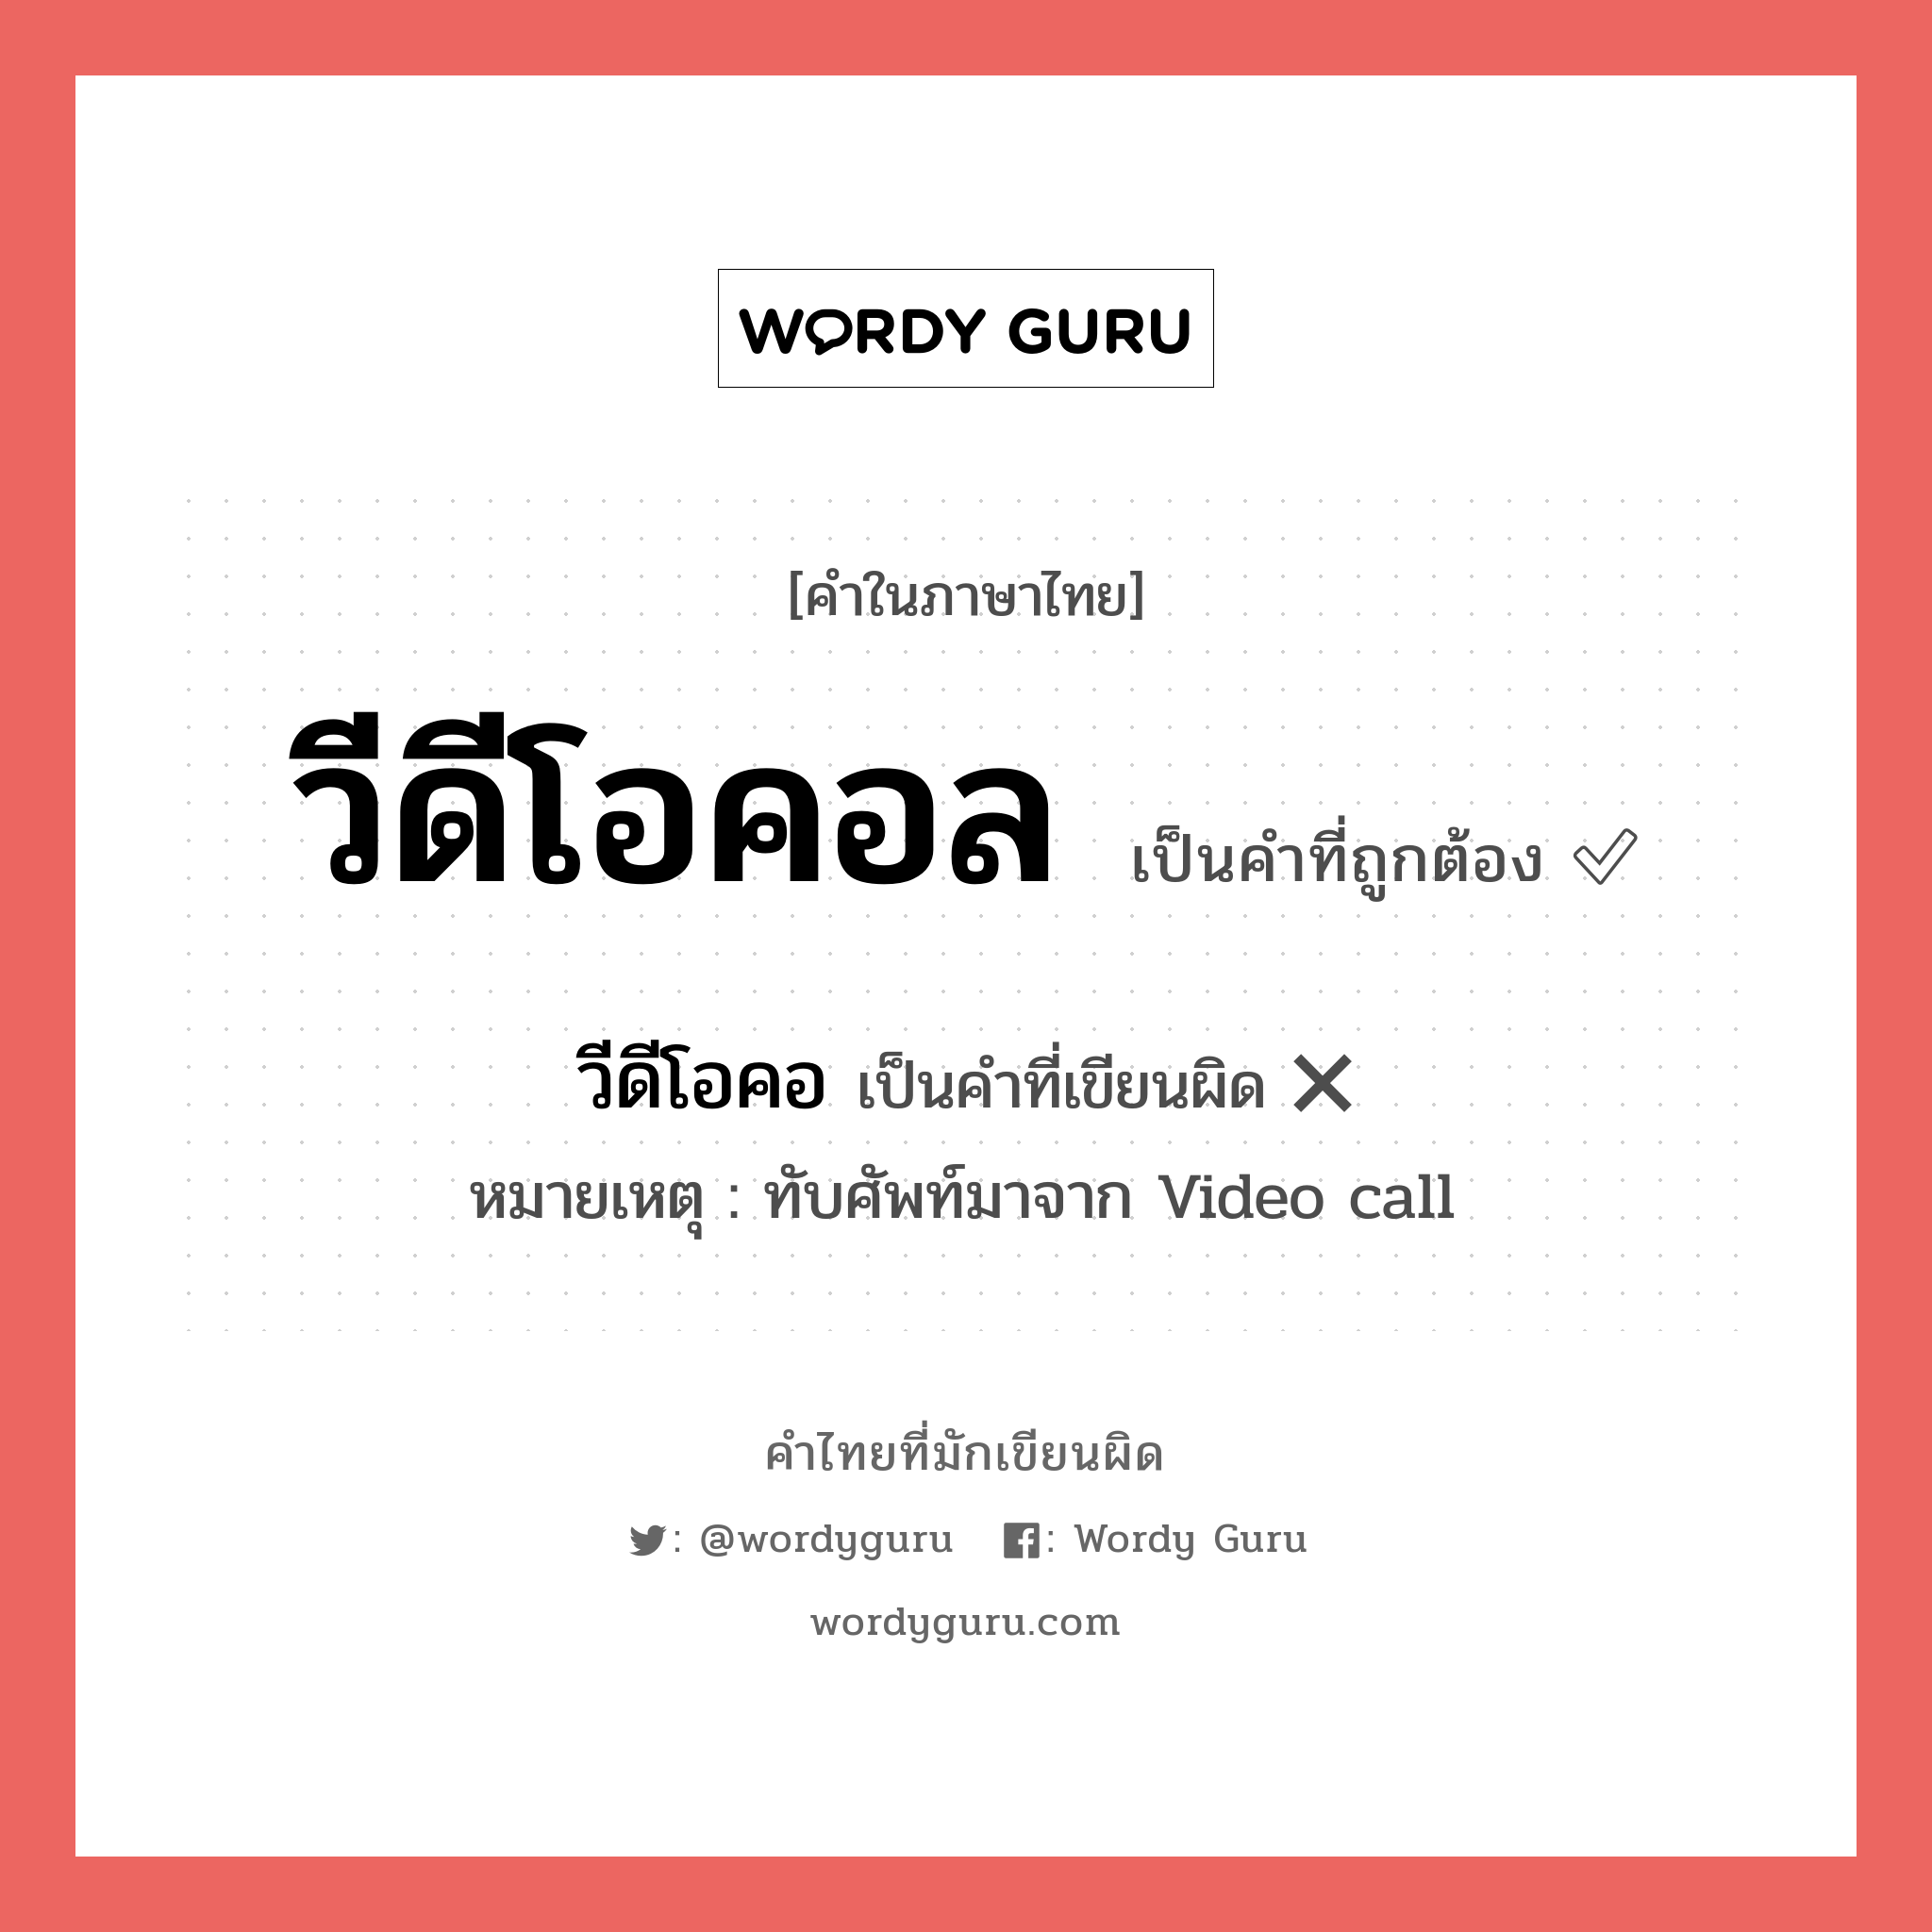 วีดีโอคอล หรือ วีดีโอคลอ คำไหนเขียนถูก?, คำในภาษาไทยที่มักเขียนผิด วีดีโอคอล คำที่ผิด ❌ วีดีโอคอ หมายเหตุ ทับศัพท์มาจาก Video call หมวด การติดต่อสื่อสาร หมวด การติดต่อสื่อสาร